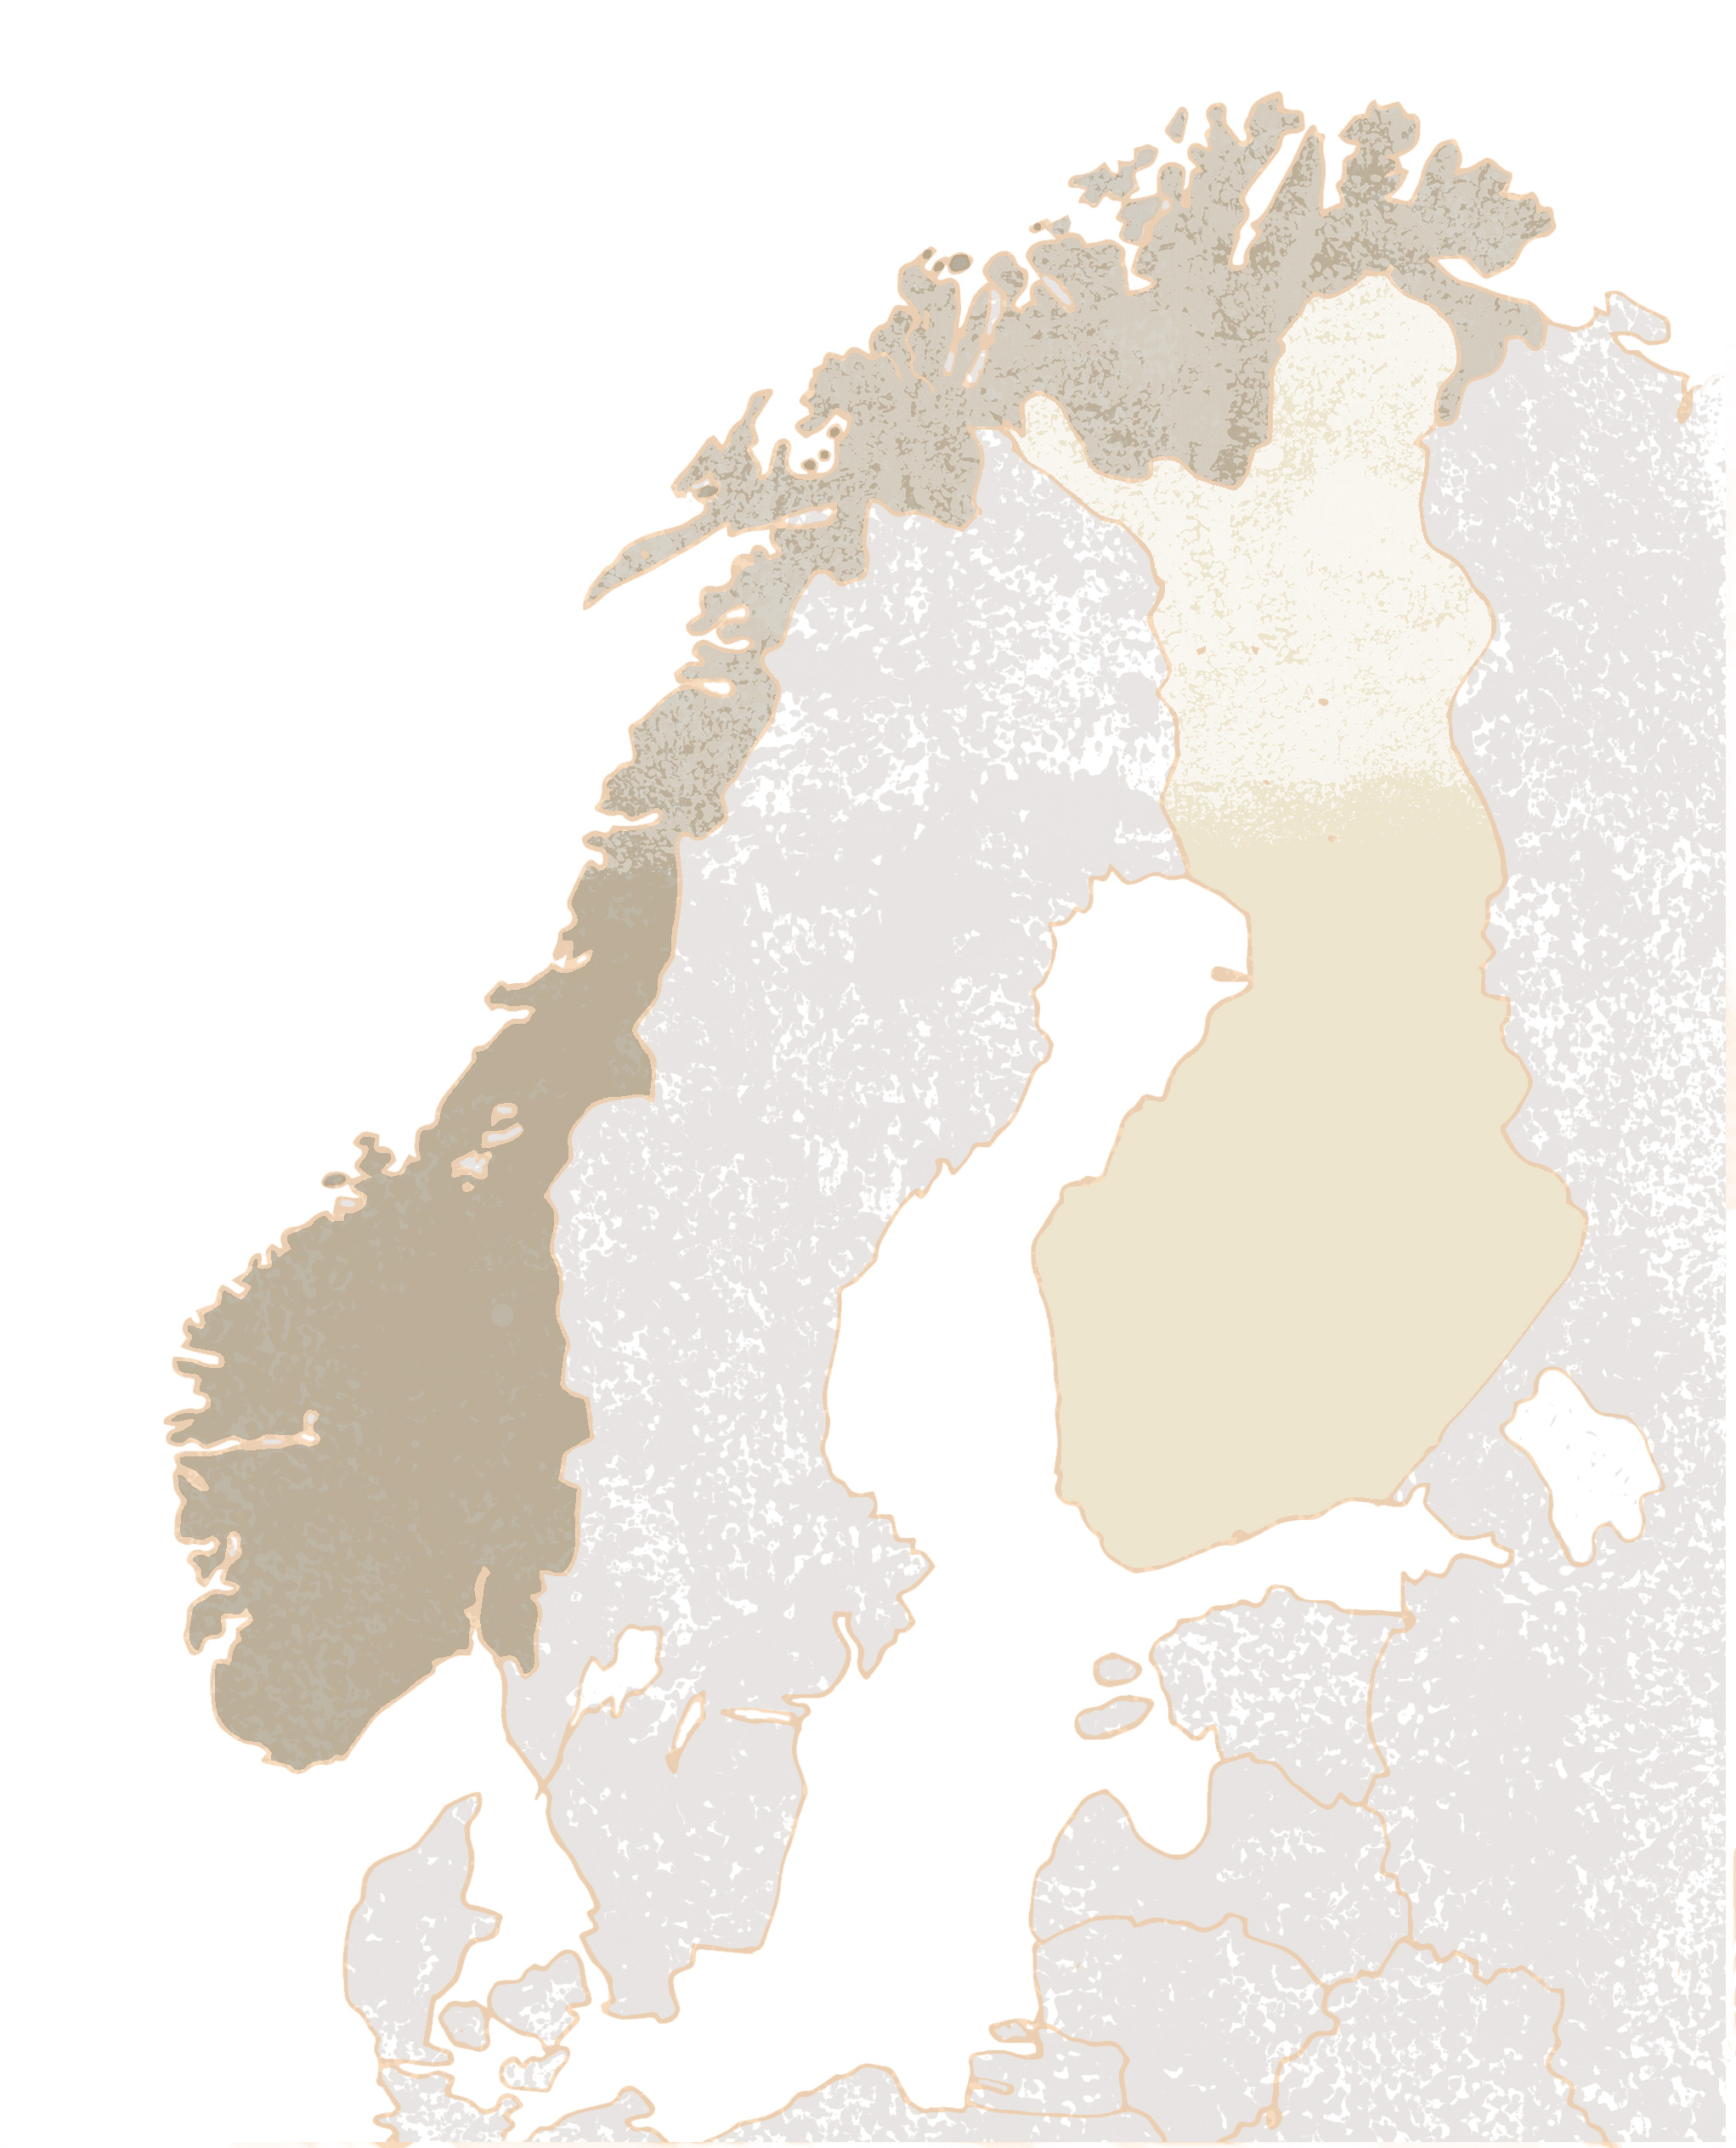 Réalisation de la carte de la Scandinavie illustration dessin